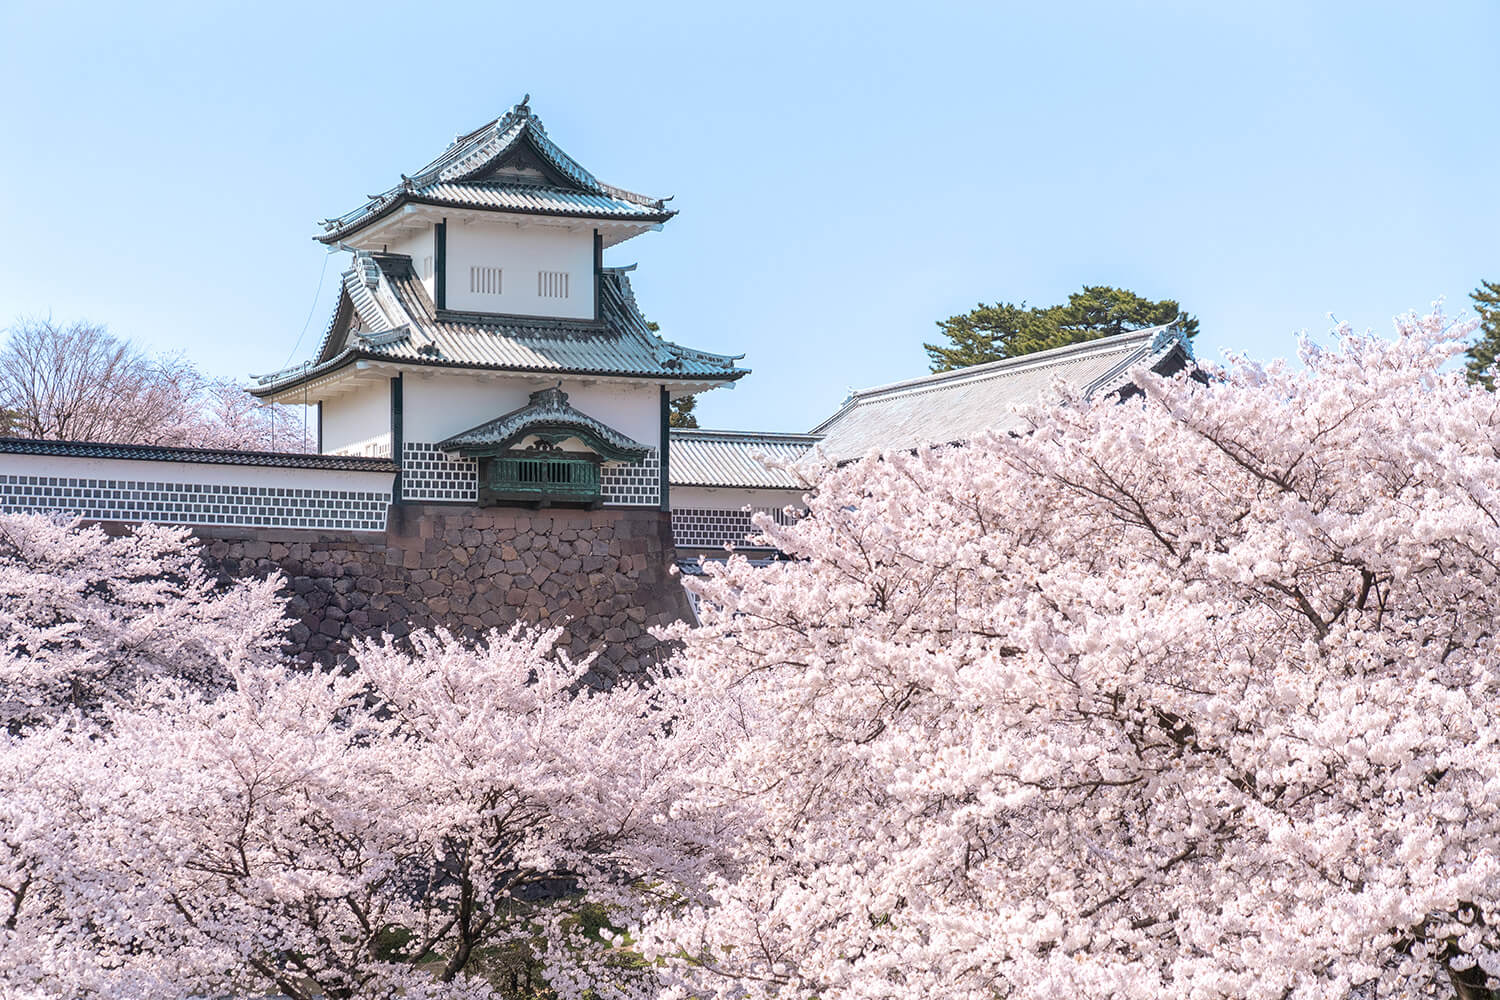 石川門に咲き誇る桜は圧巻